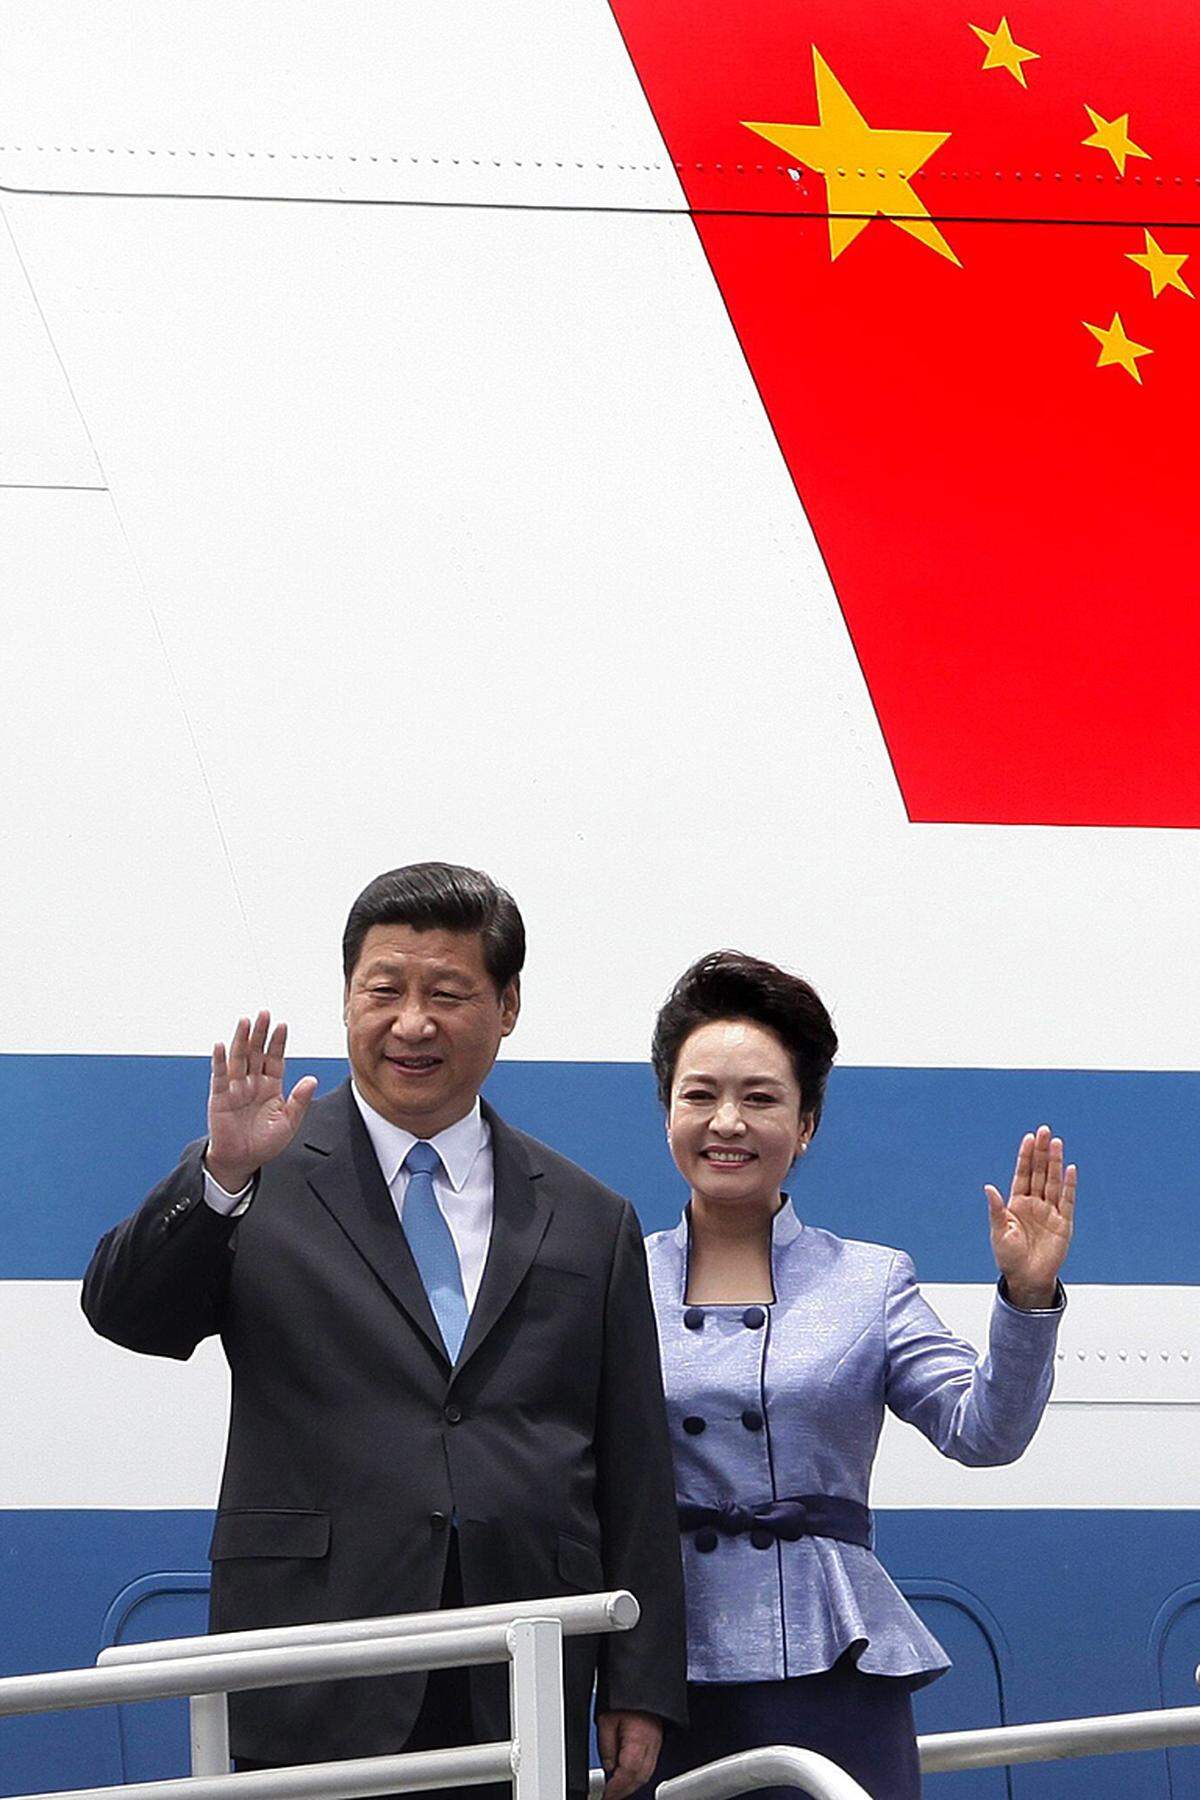 ... fehlt im diesjährigen Ranking. Dafür scheint erstmals die First Lady Chinas, Peng Liyuan, auf.Ebenfalls in der "Best Dress"-Liste befinden sich: